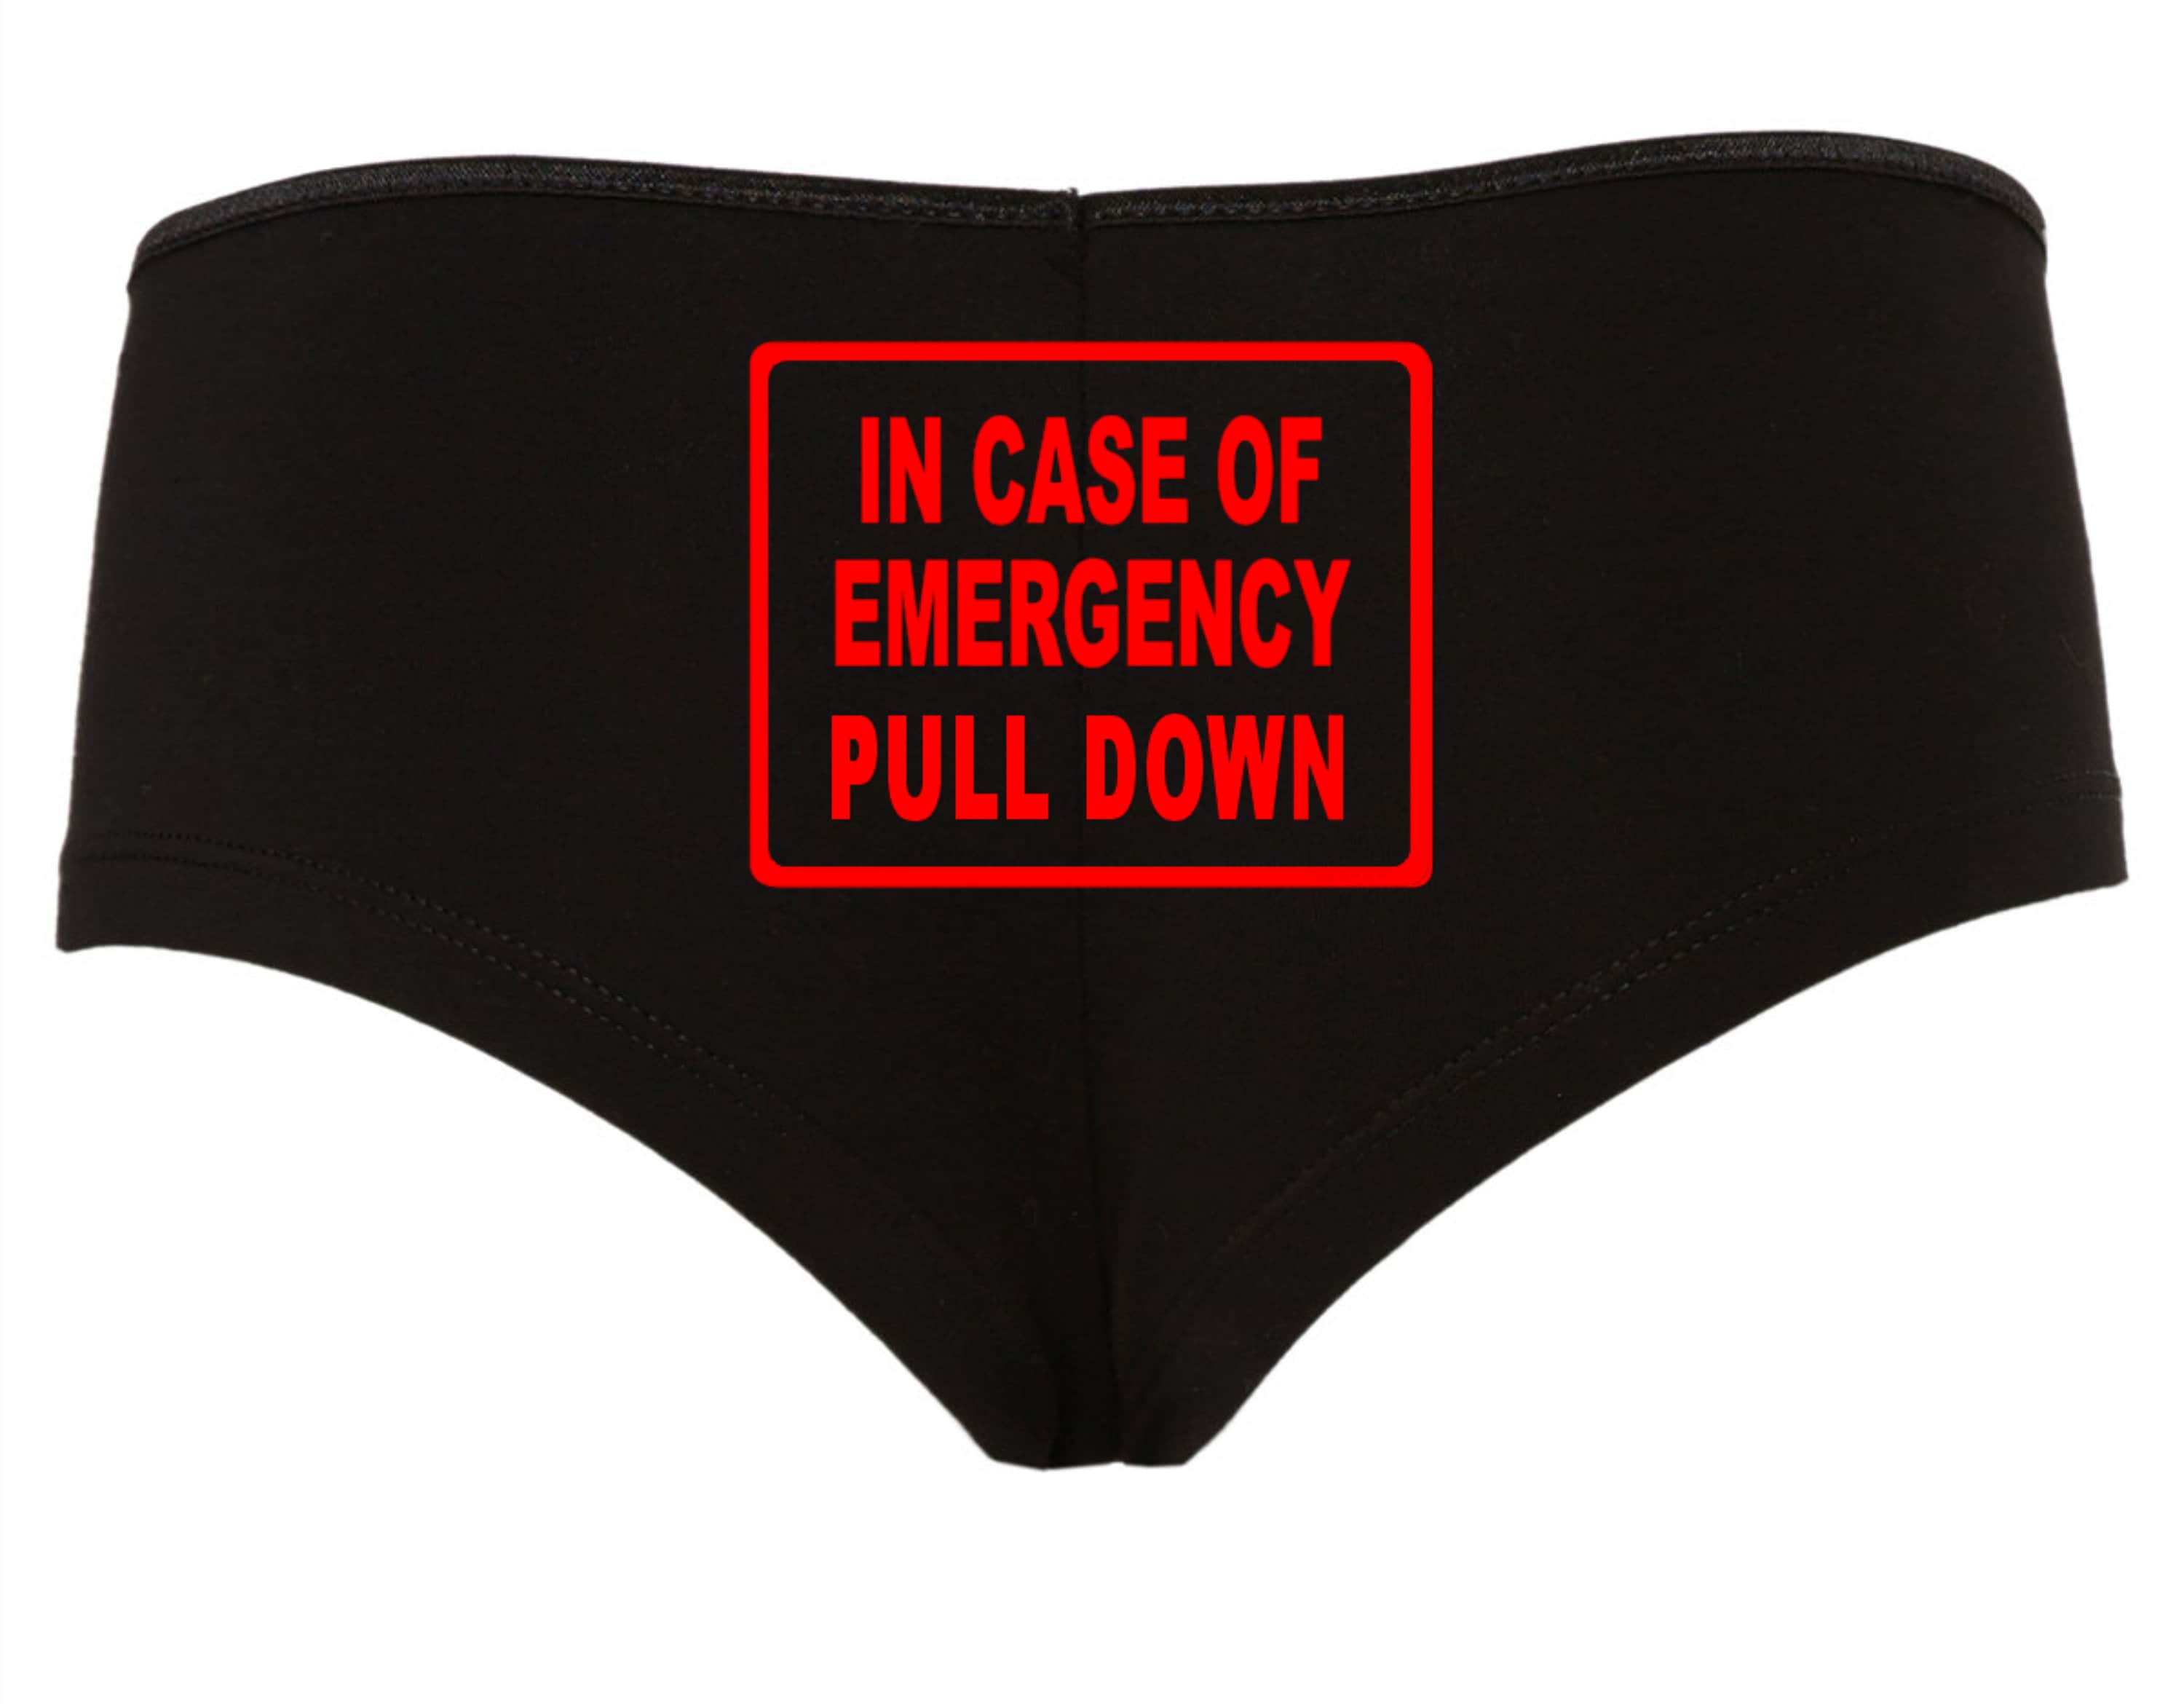 In Case of Emergency Pull Down Thongs Funny Panties Womens